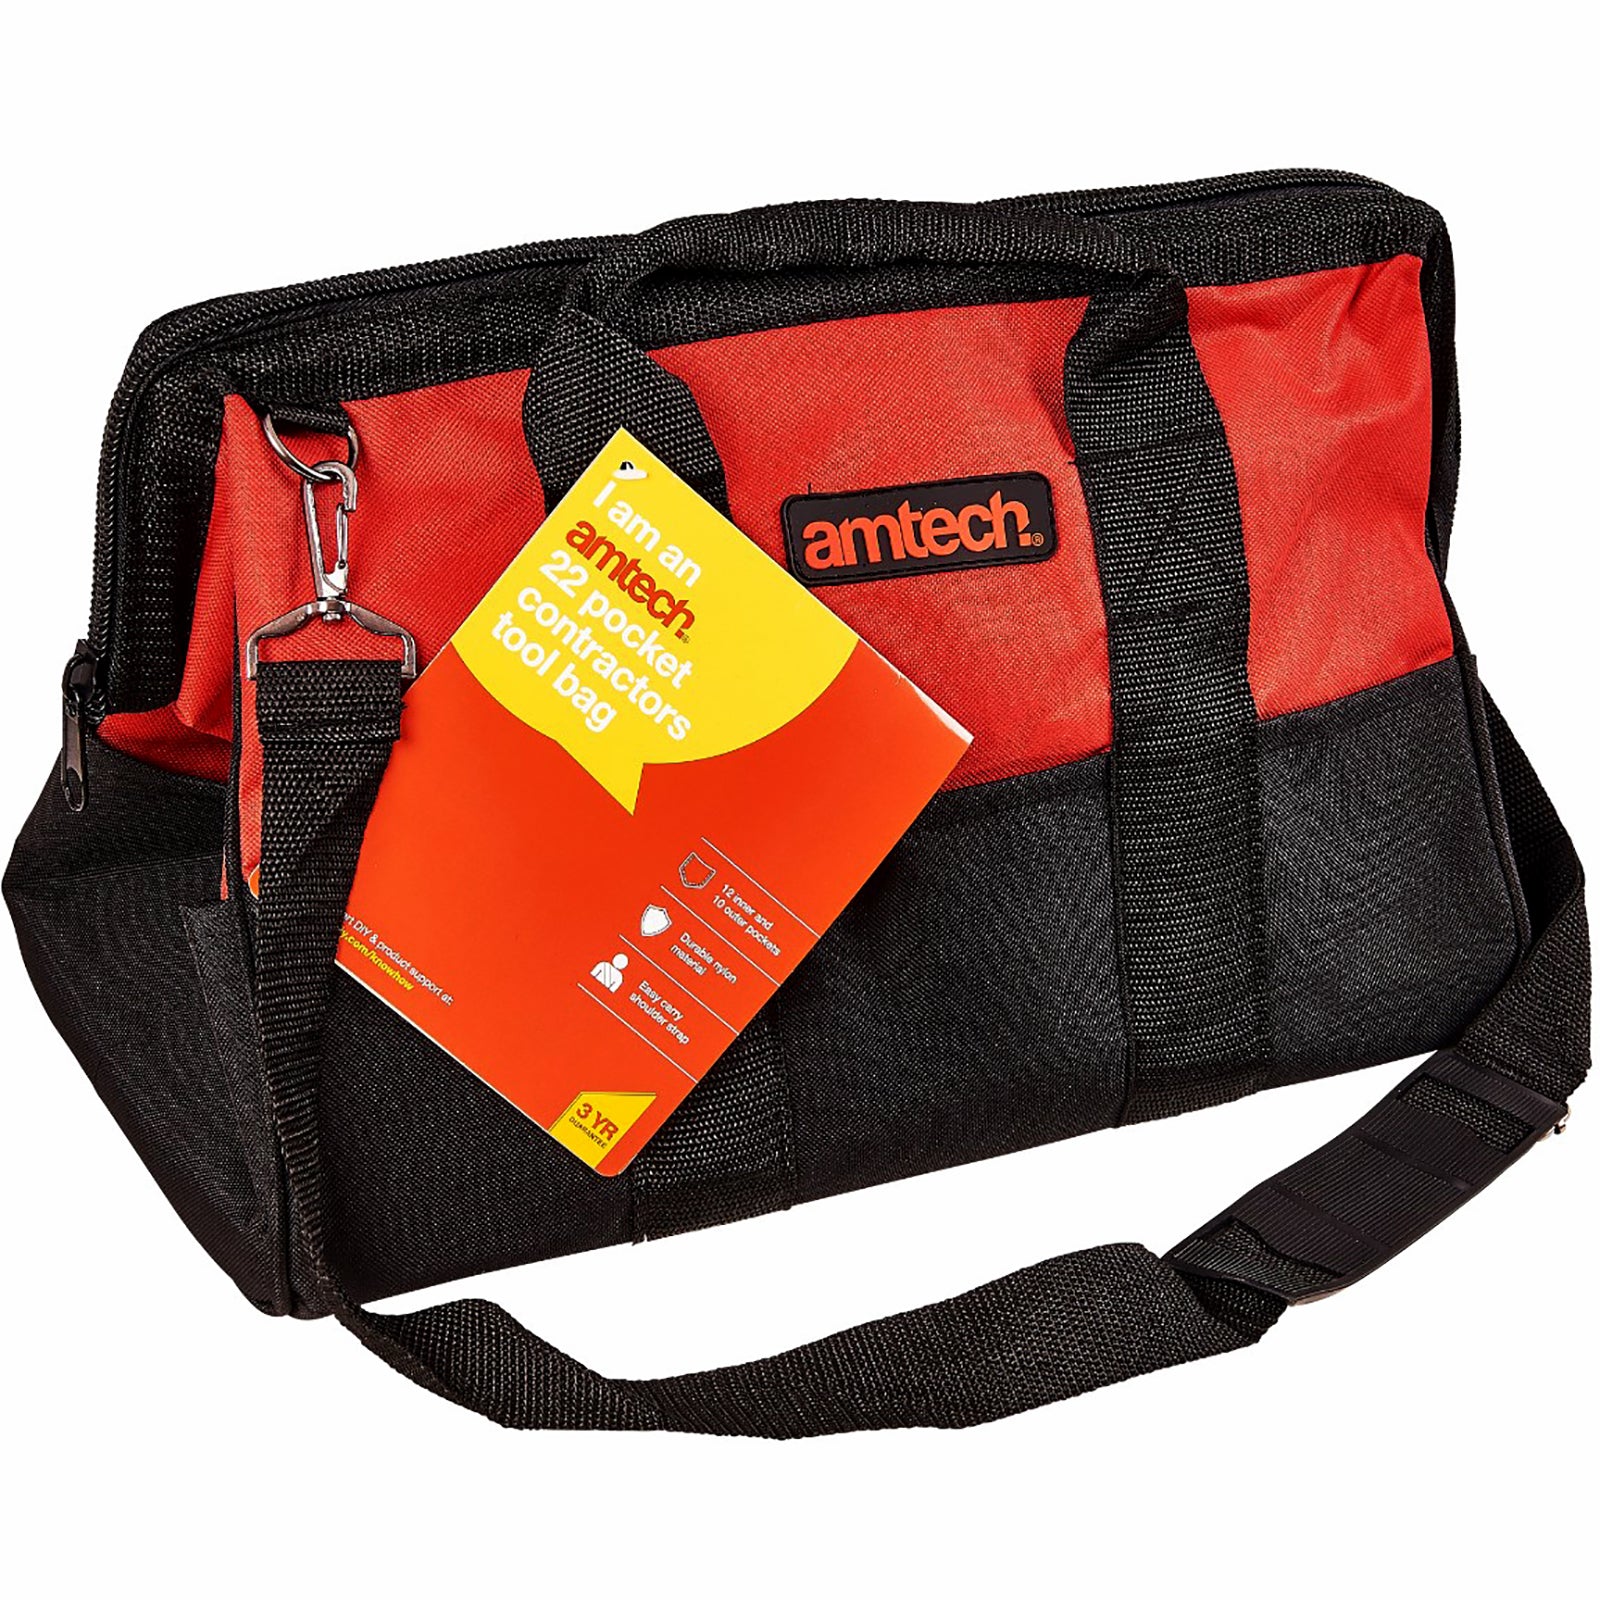 Amtech 22 Pocket Contractors Holdall Tool Bag